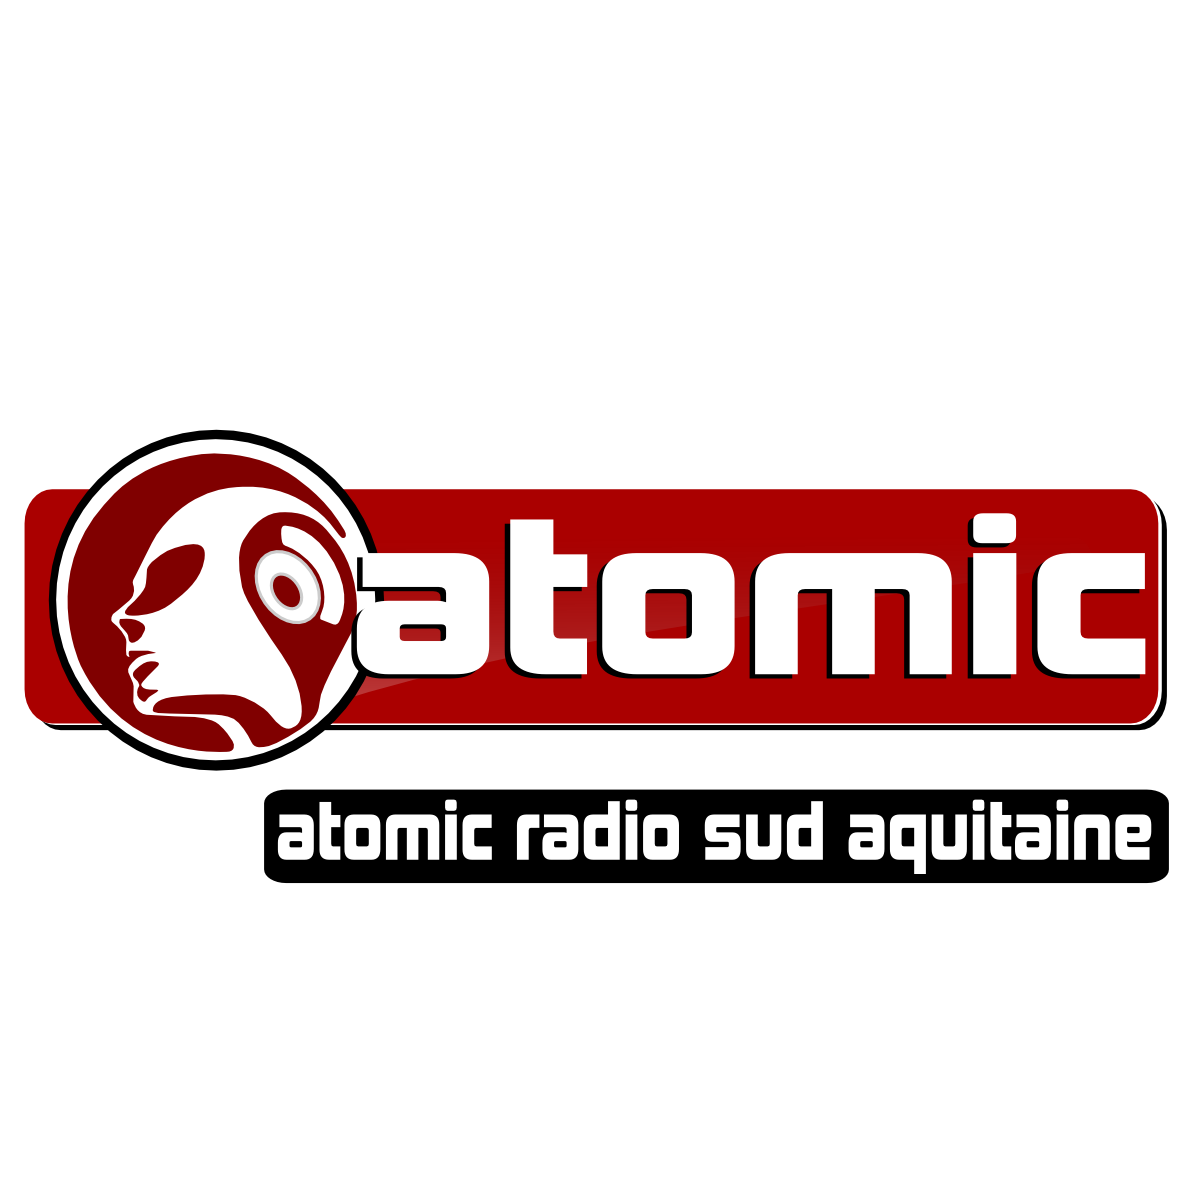 ATOMIC RADIO SUD AQUITAINE